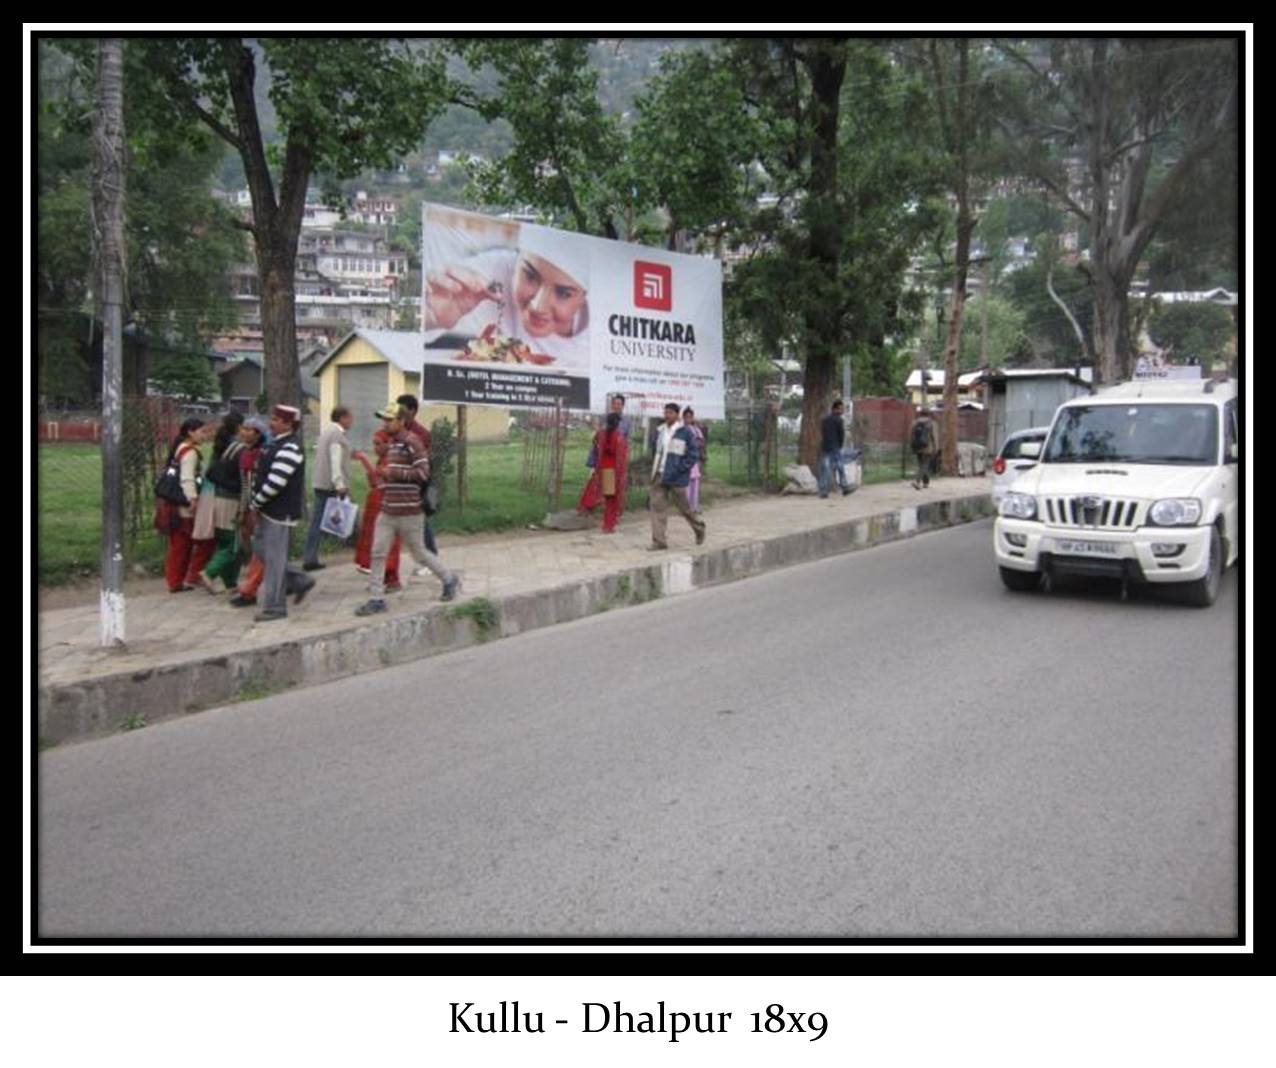 Dhalpur, Kullu